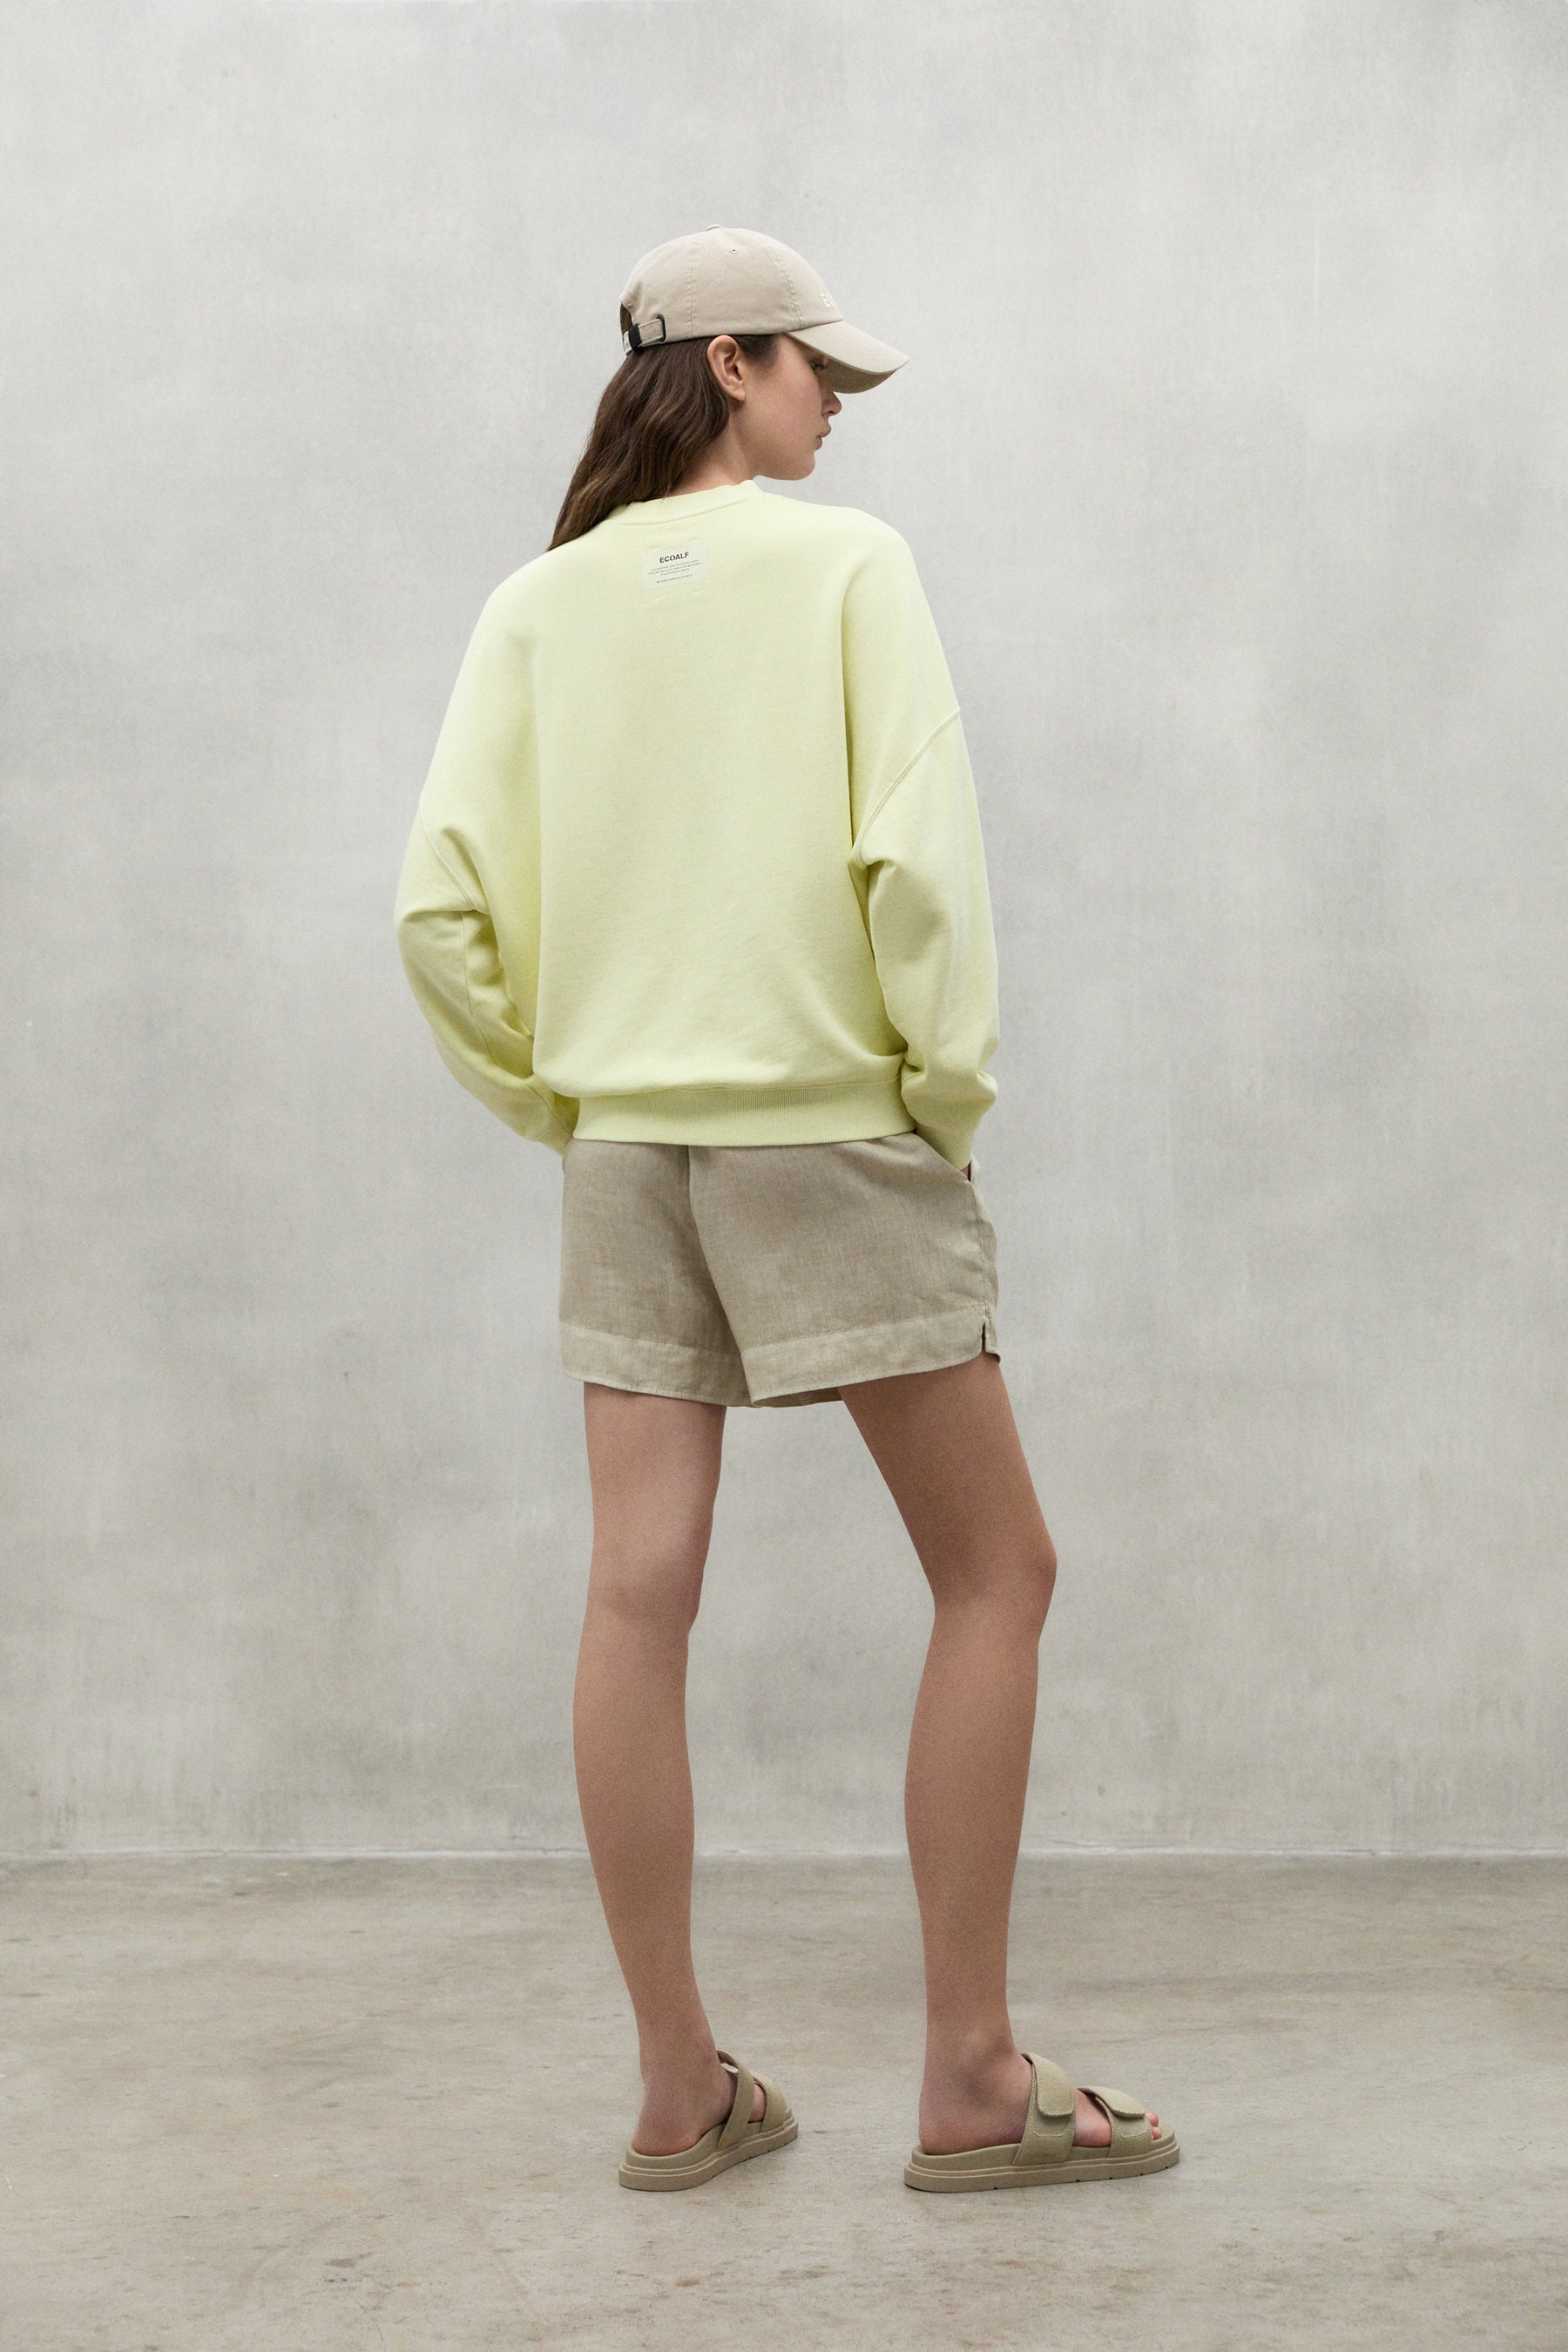 Ecoalf // Bogenalf Sweatshirt Woman // Soft Lime